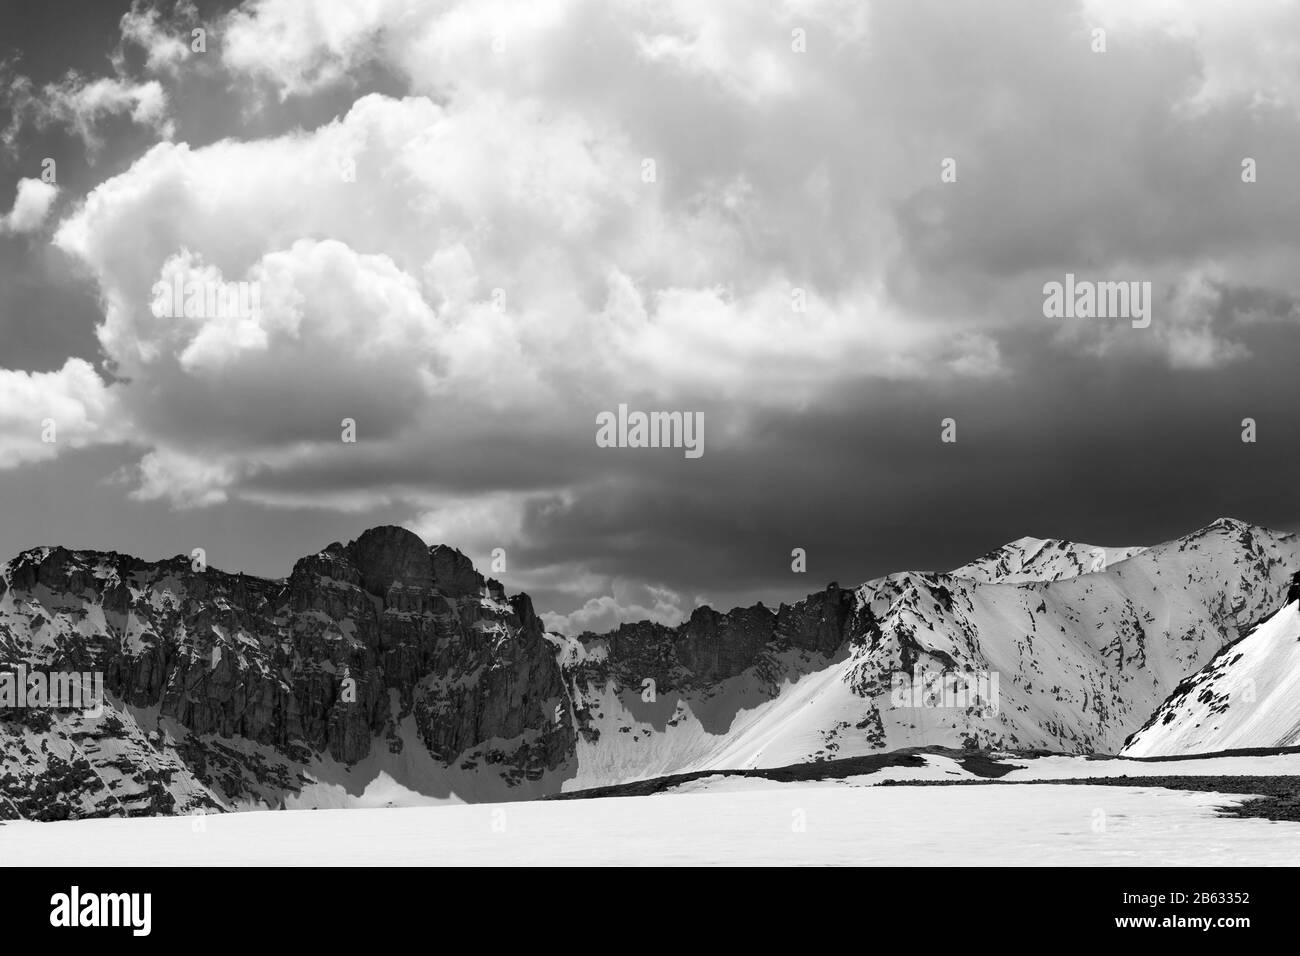 Montagnes enneigées et ciel avec nuages. Turquie, Montagnes Du Taureau Central, Aladaglar (Anti Taurus), Plateau Edigel (Yedi Goller). Tonne noire et blanche Banque D'Images